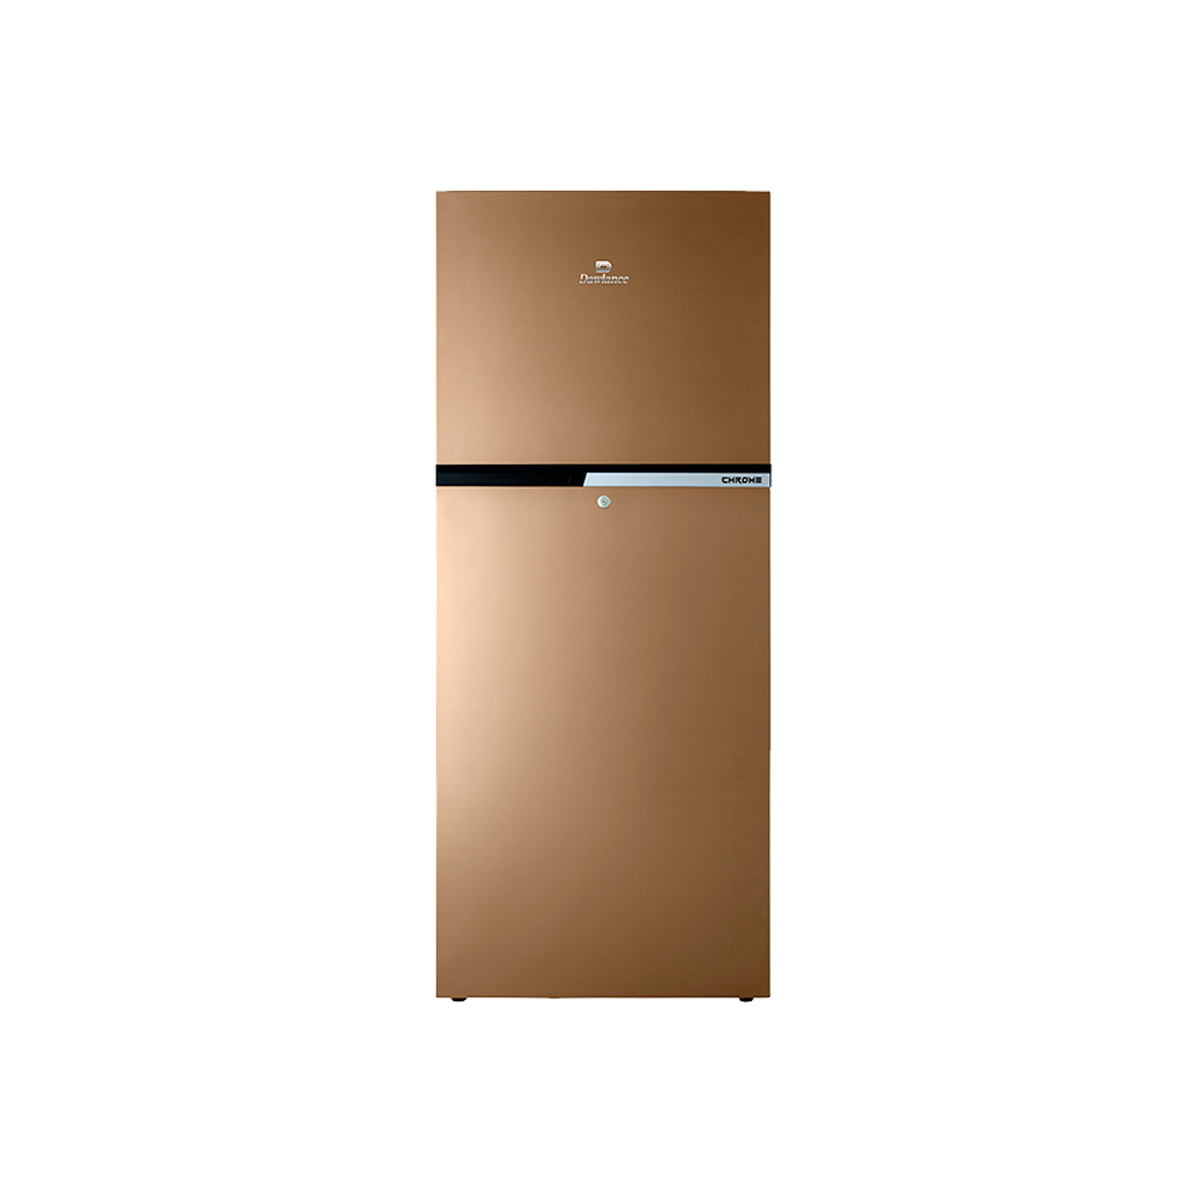 Dawlance 9193 LF Chrome Refrigerator